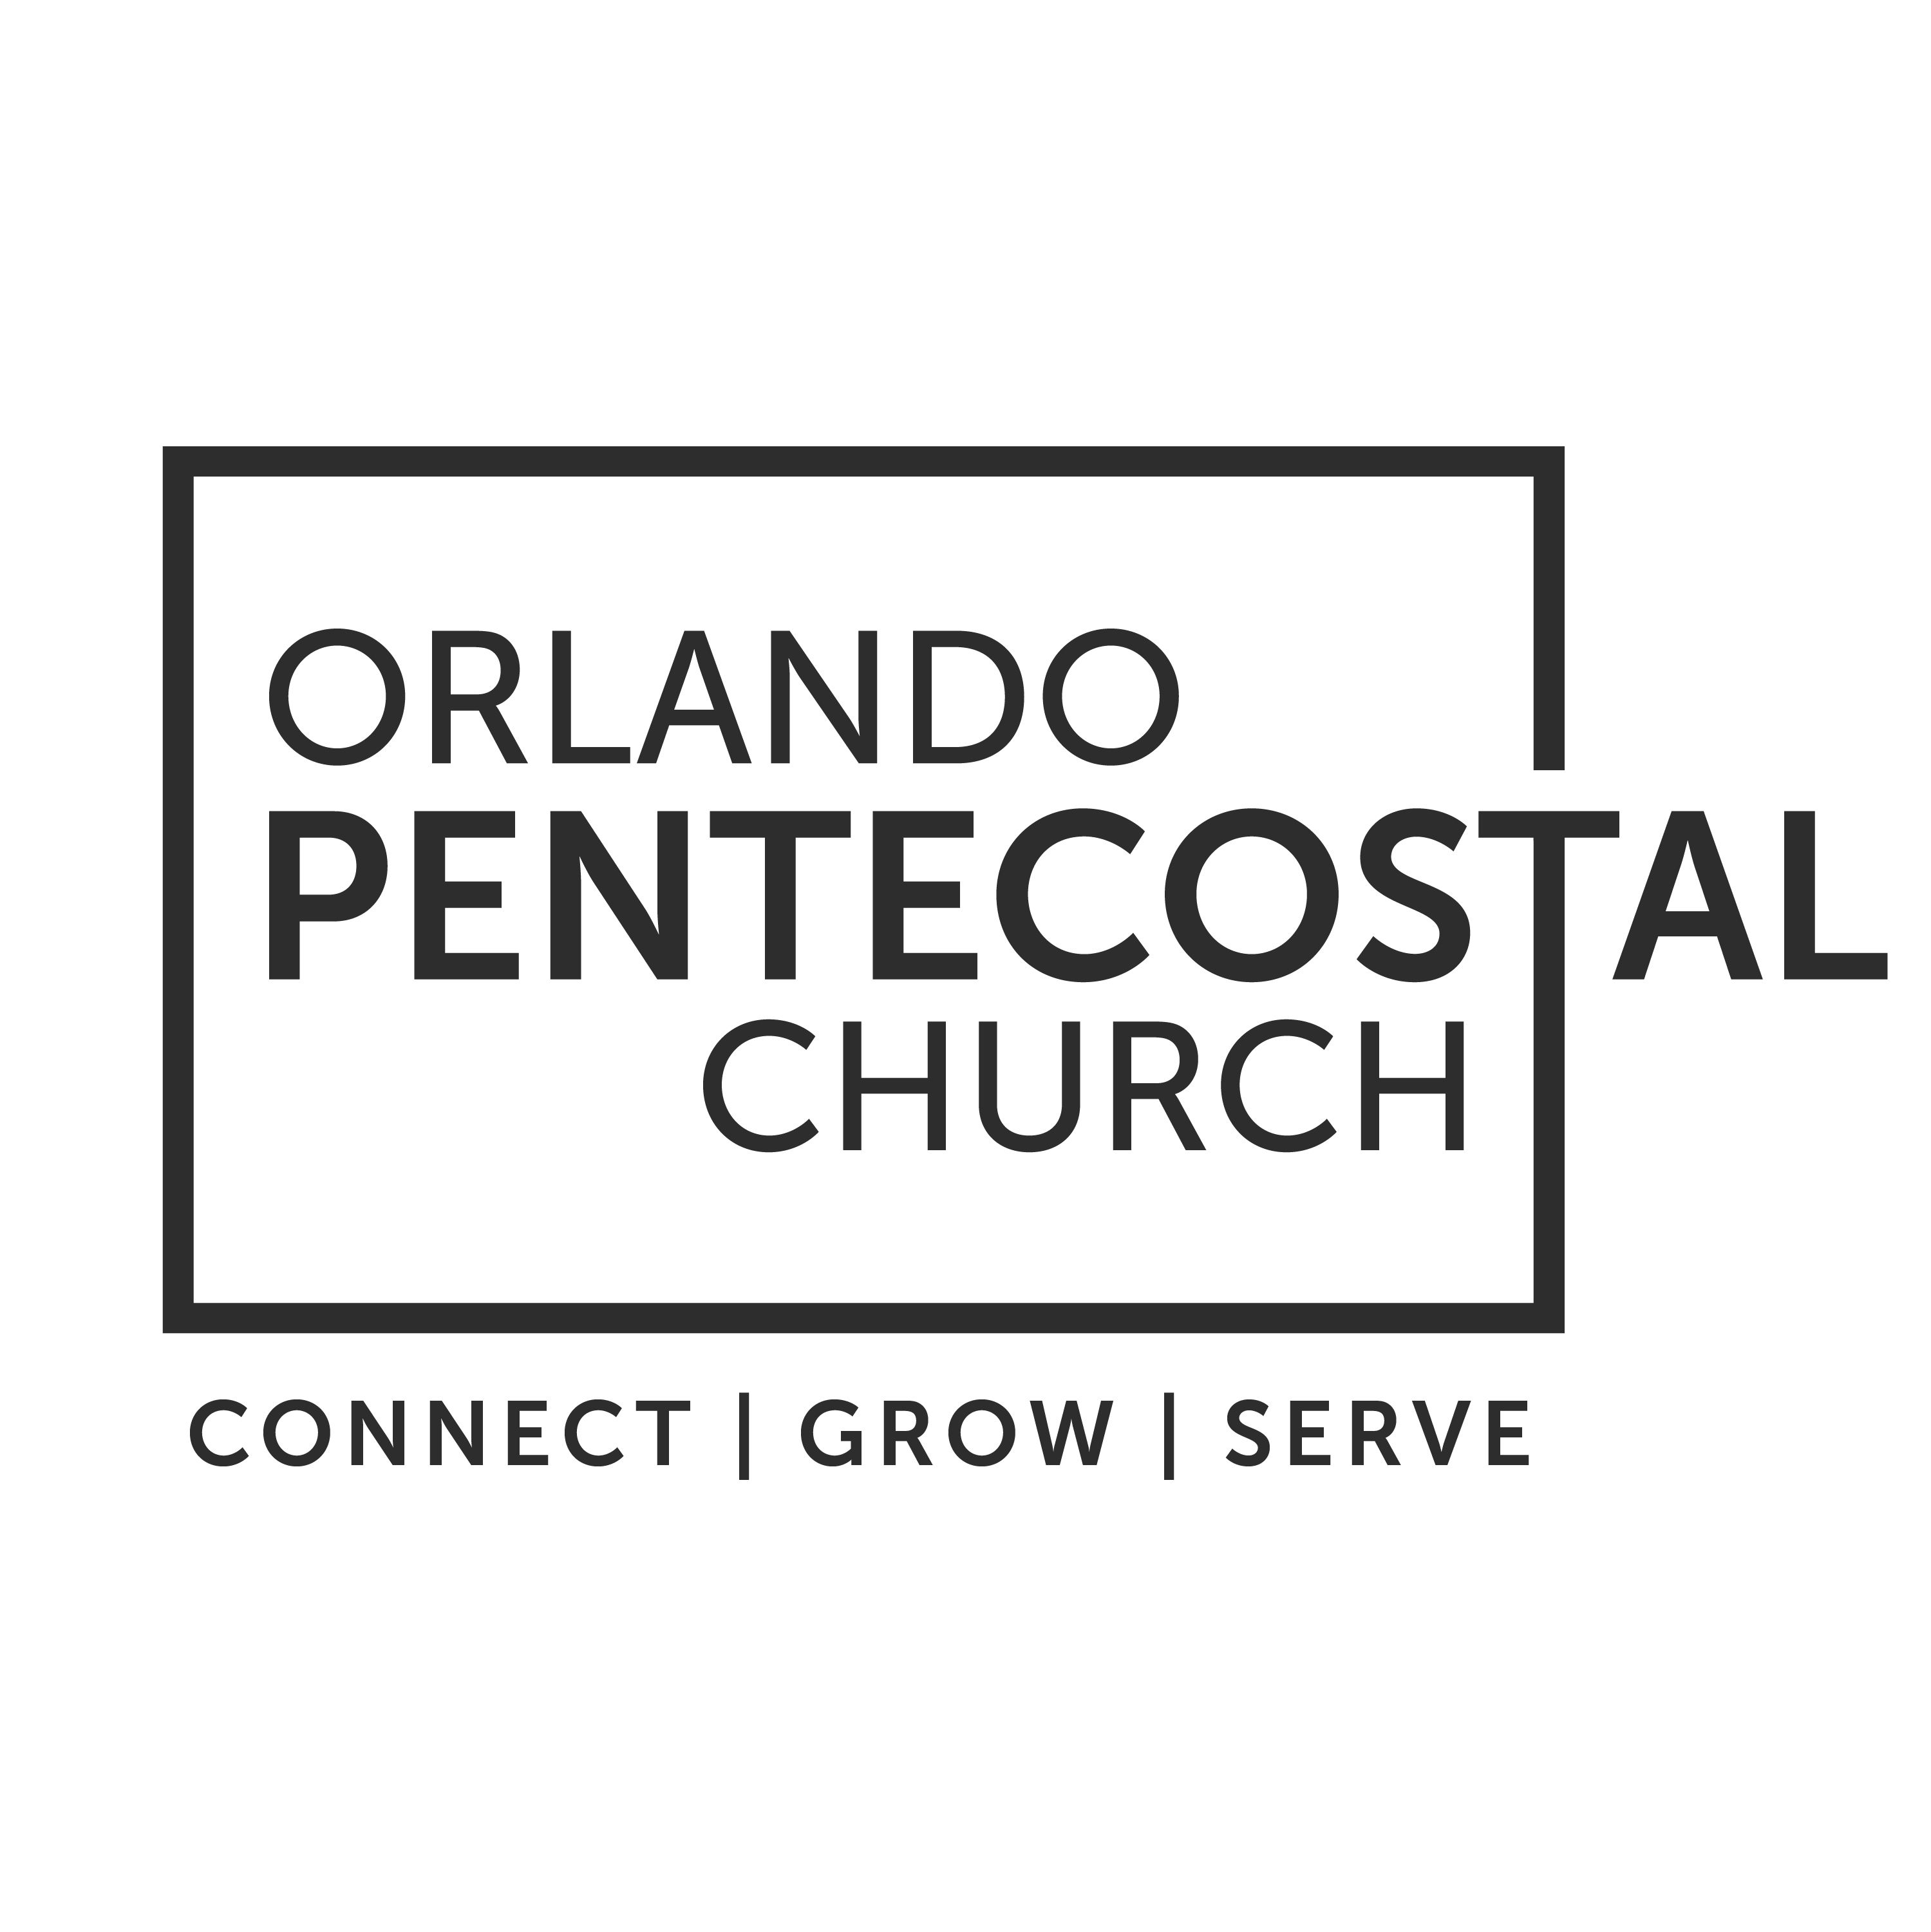 Orlando Pentecostal Church